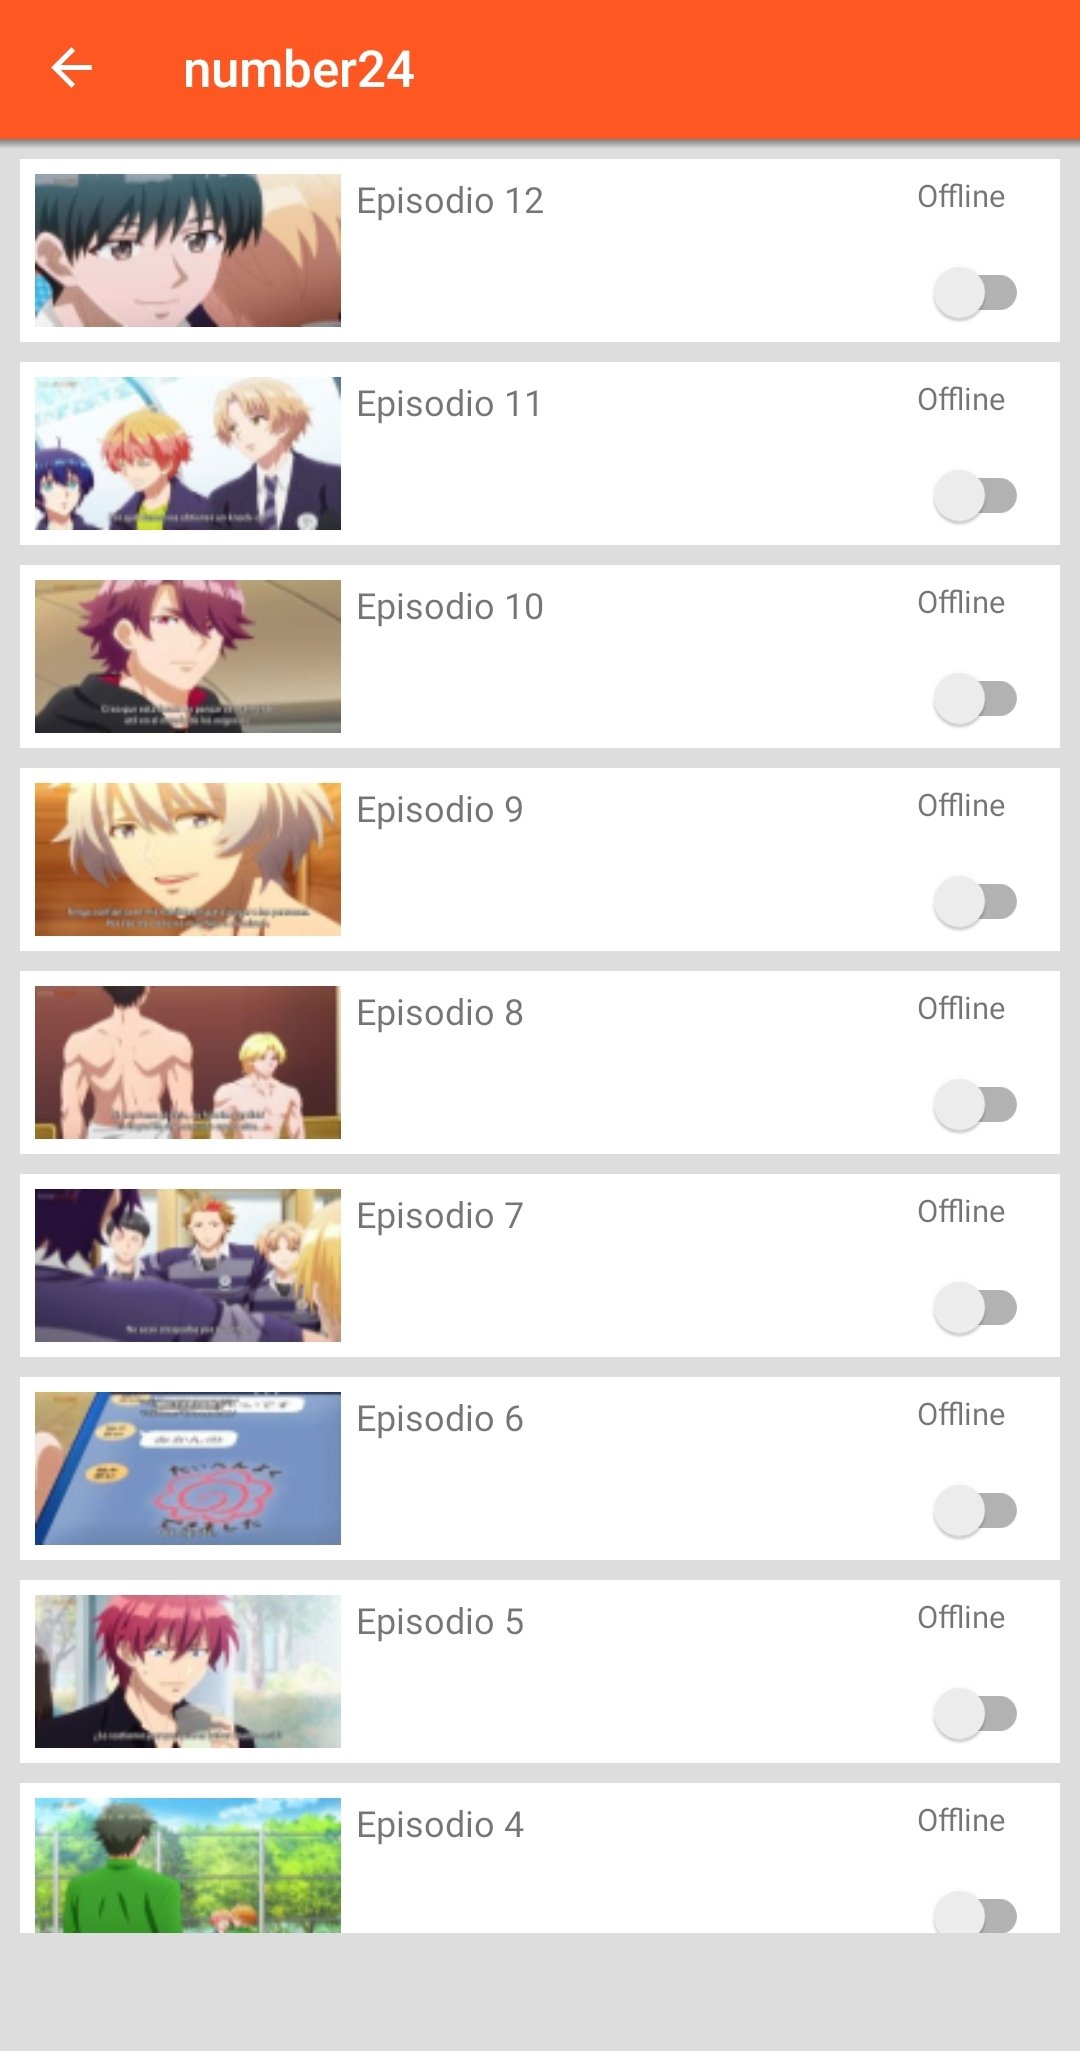 Download do APK de Central de Animes para Android